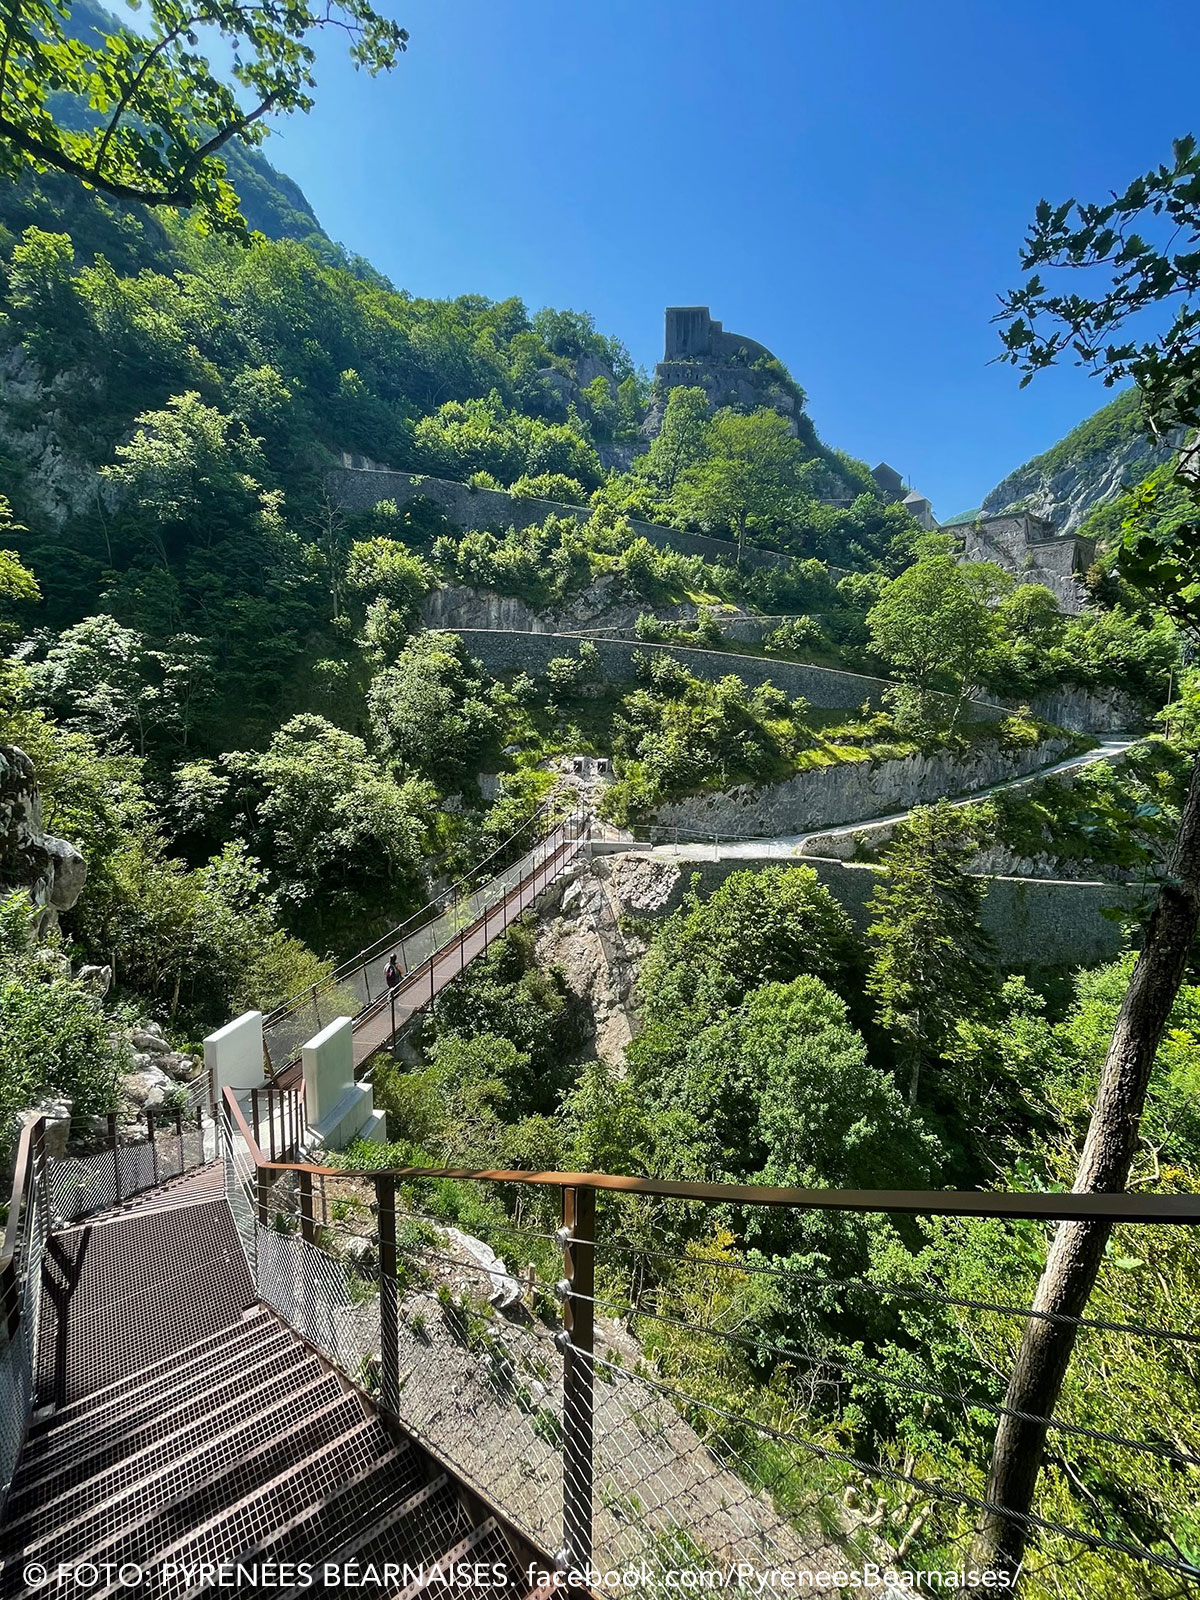 La vertiginosa pasarela que une el Chemin de la Mâture y el Fort du Portalet, en el vecino Valle de Aspe ya es una realidad. Esta es la imagen publicada en redes sociales por la Oficina de Turismo de Pyrénées Béarnaises y que nos muestra la panorámica desde la misma, a 35 m de altura sobre el vacío.